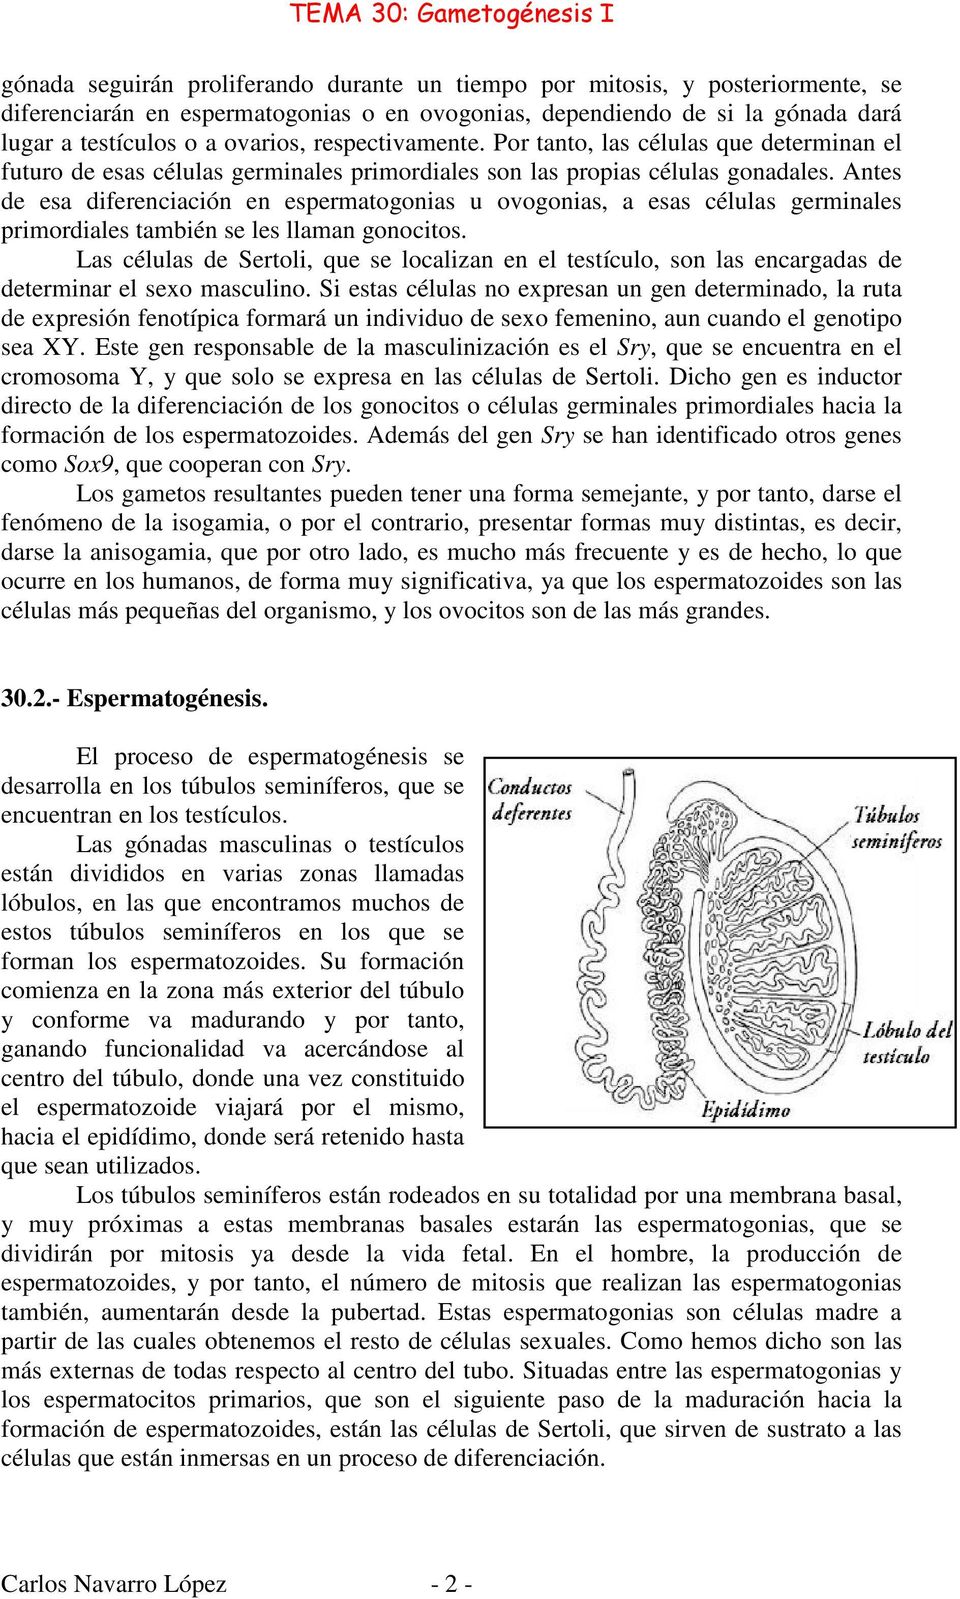 Antes de esa diferenciación en espermatogonias u ovogonias, a esas células germinales primordiales también se les llaman gonocitos.